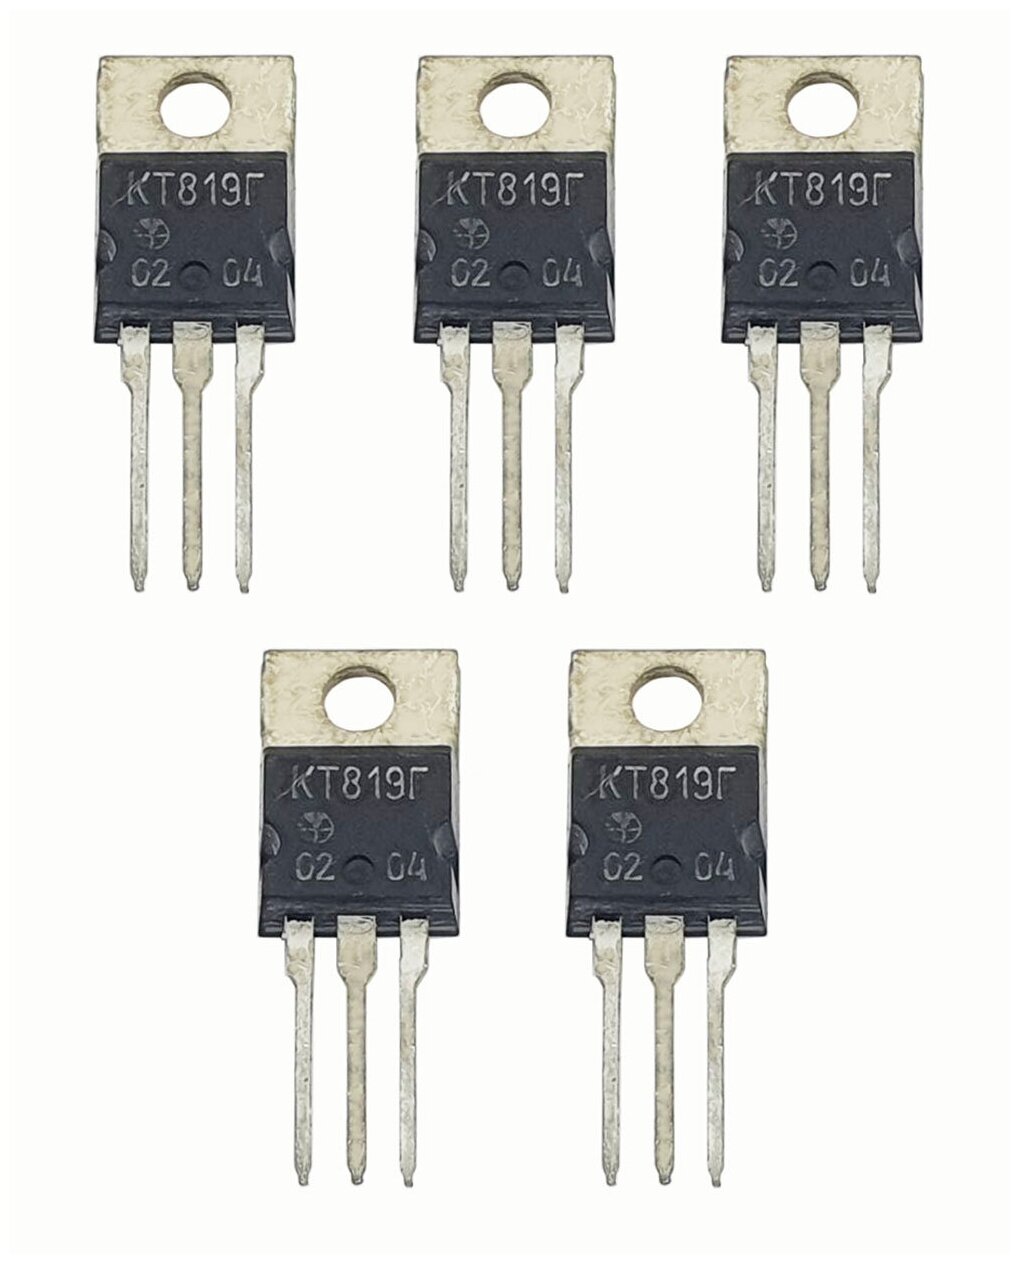 Транзистор КТ819Г, 5 штук / Аналоги: 2Т819Г, 2N5496, 2N6101, 2N6131, 2N6292, 2N6293, BDX73, BDX77, TIP41C / n-p-n переключательные